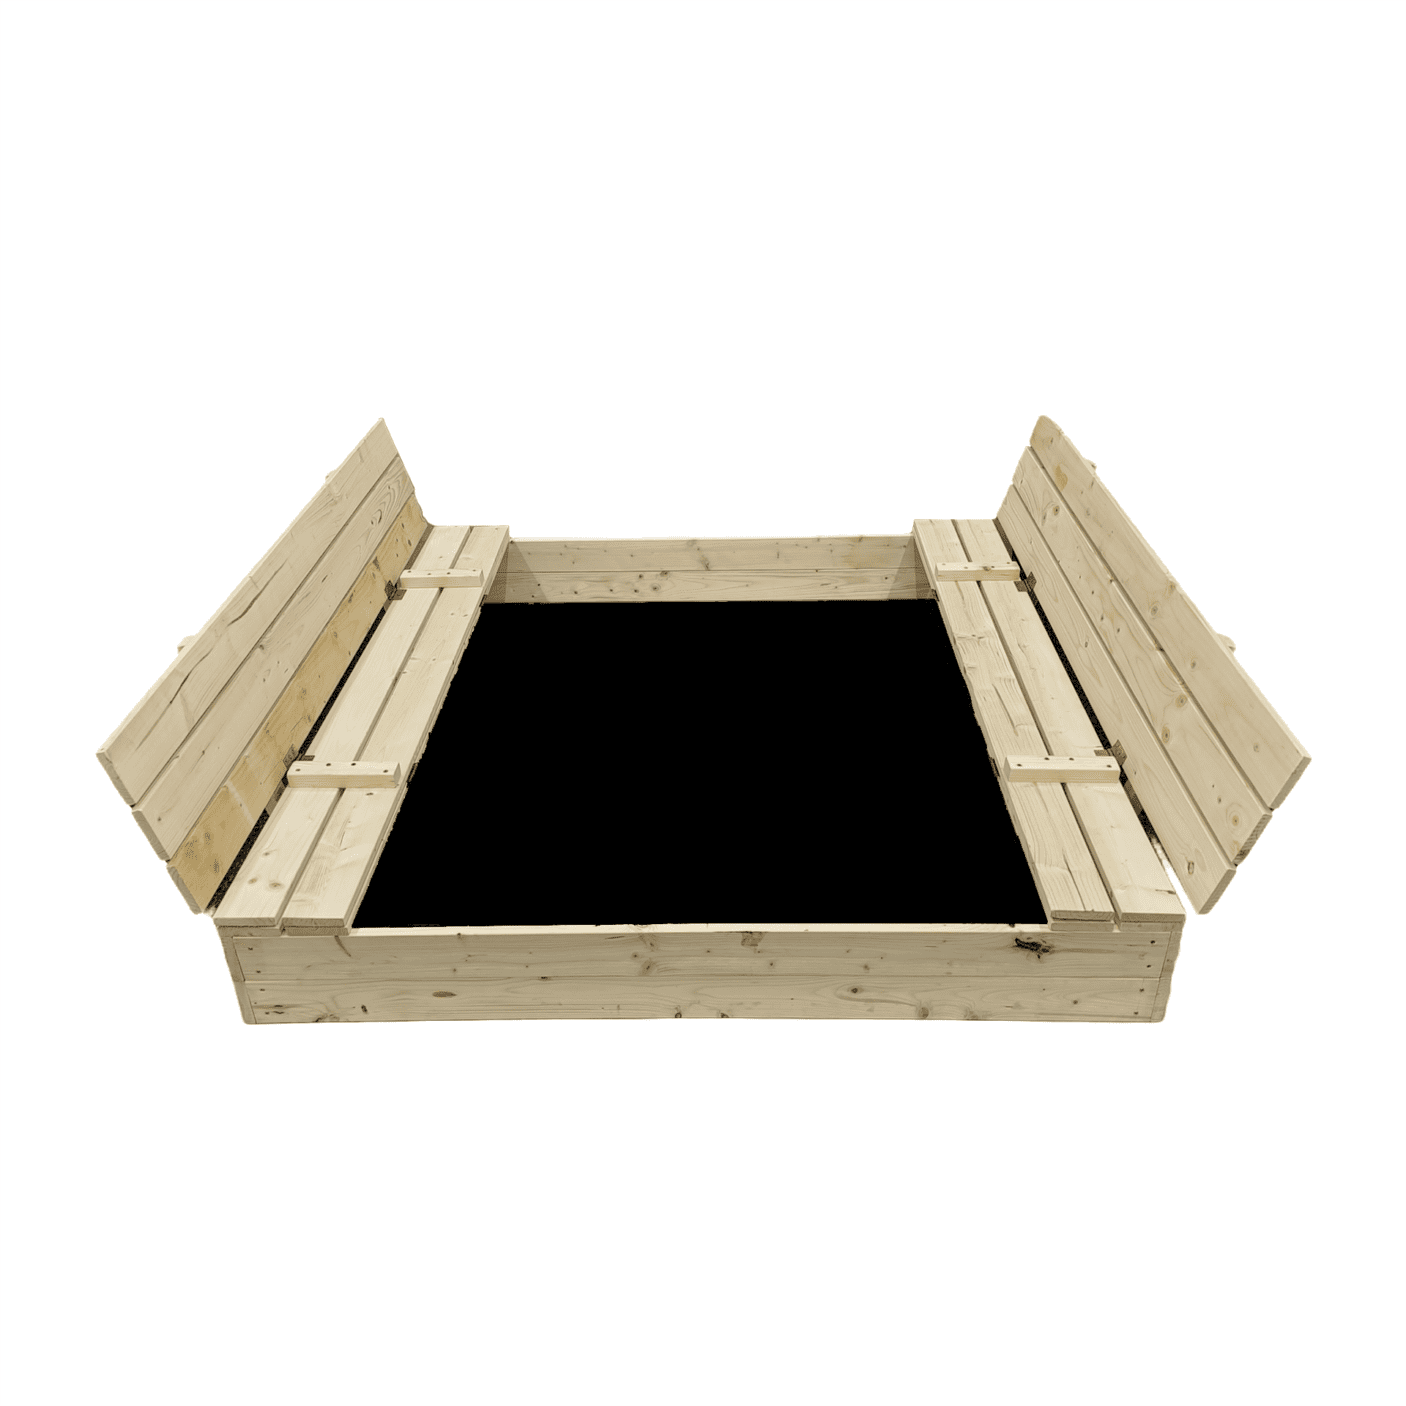 Smėlio dėžė Bonus Orbis, 140x140cm, su patiesalu ir 300kg smėlio